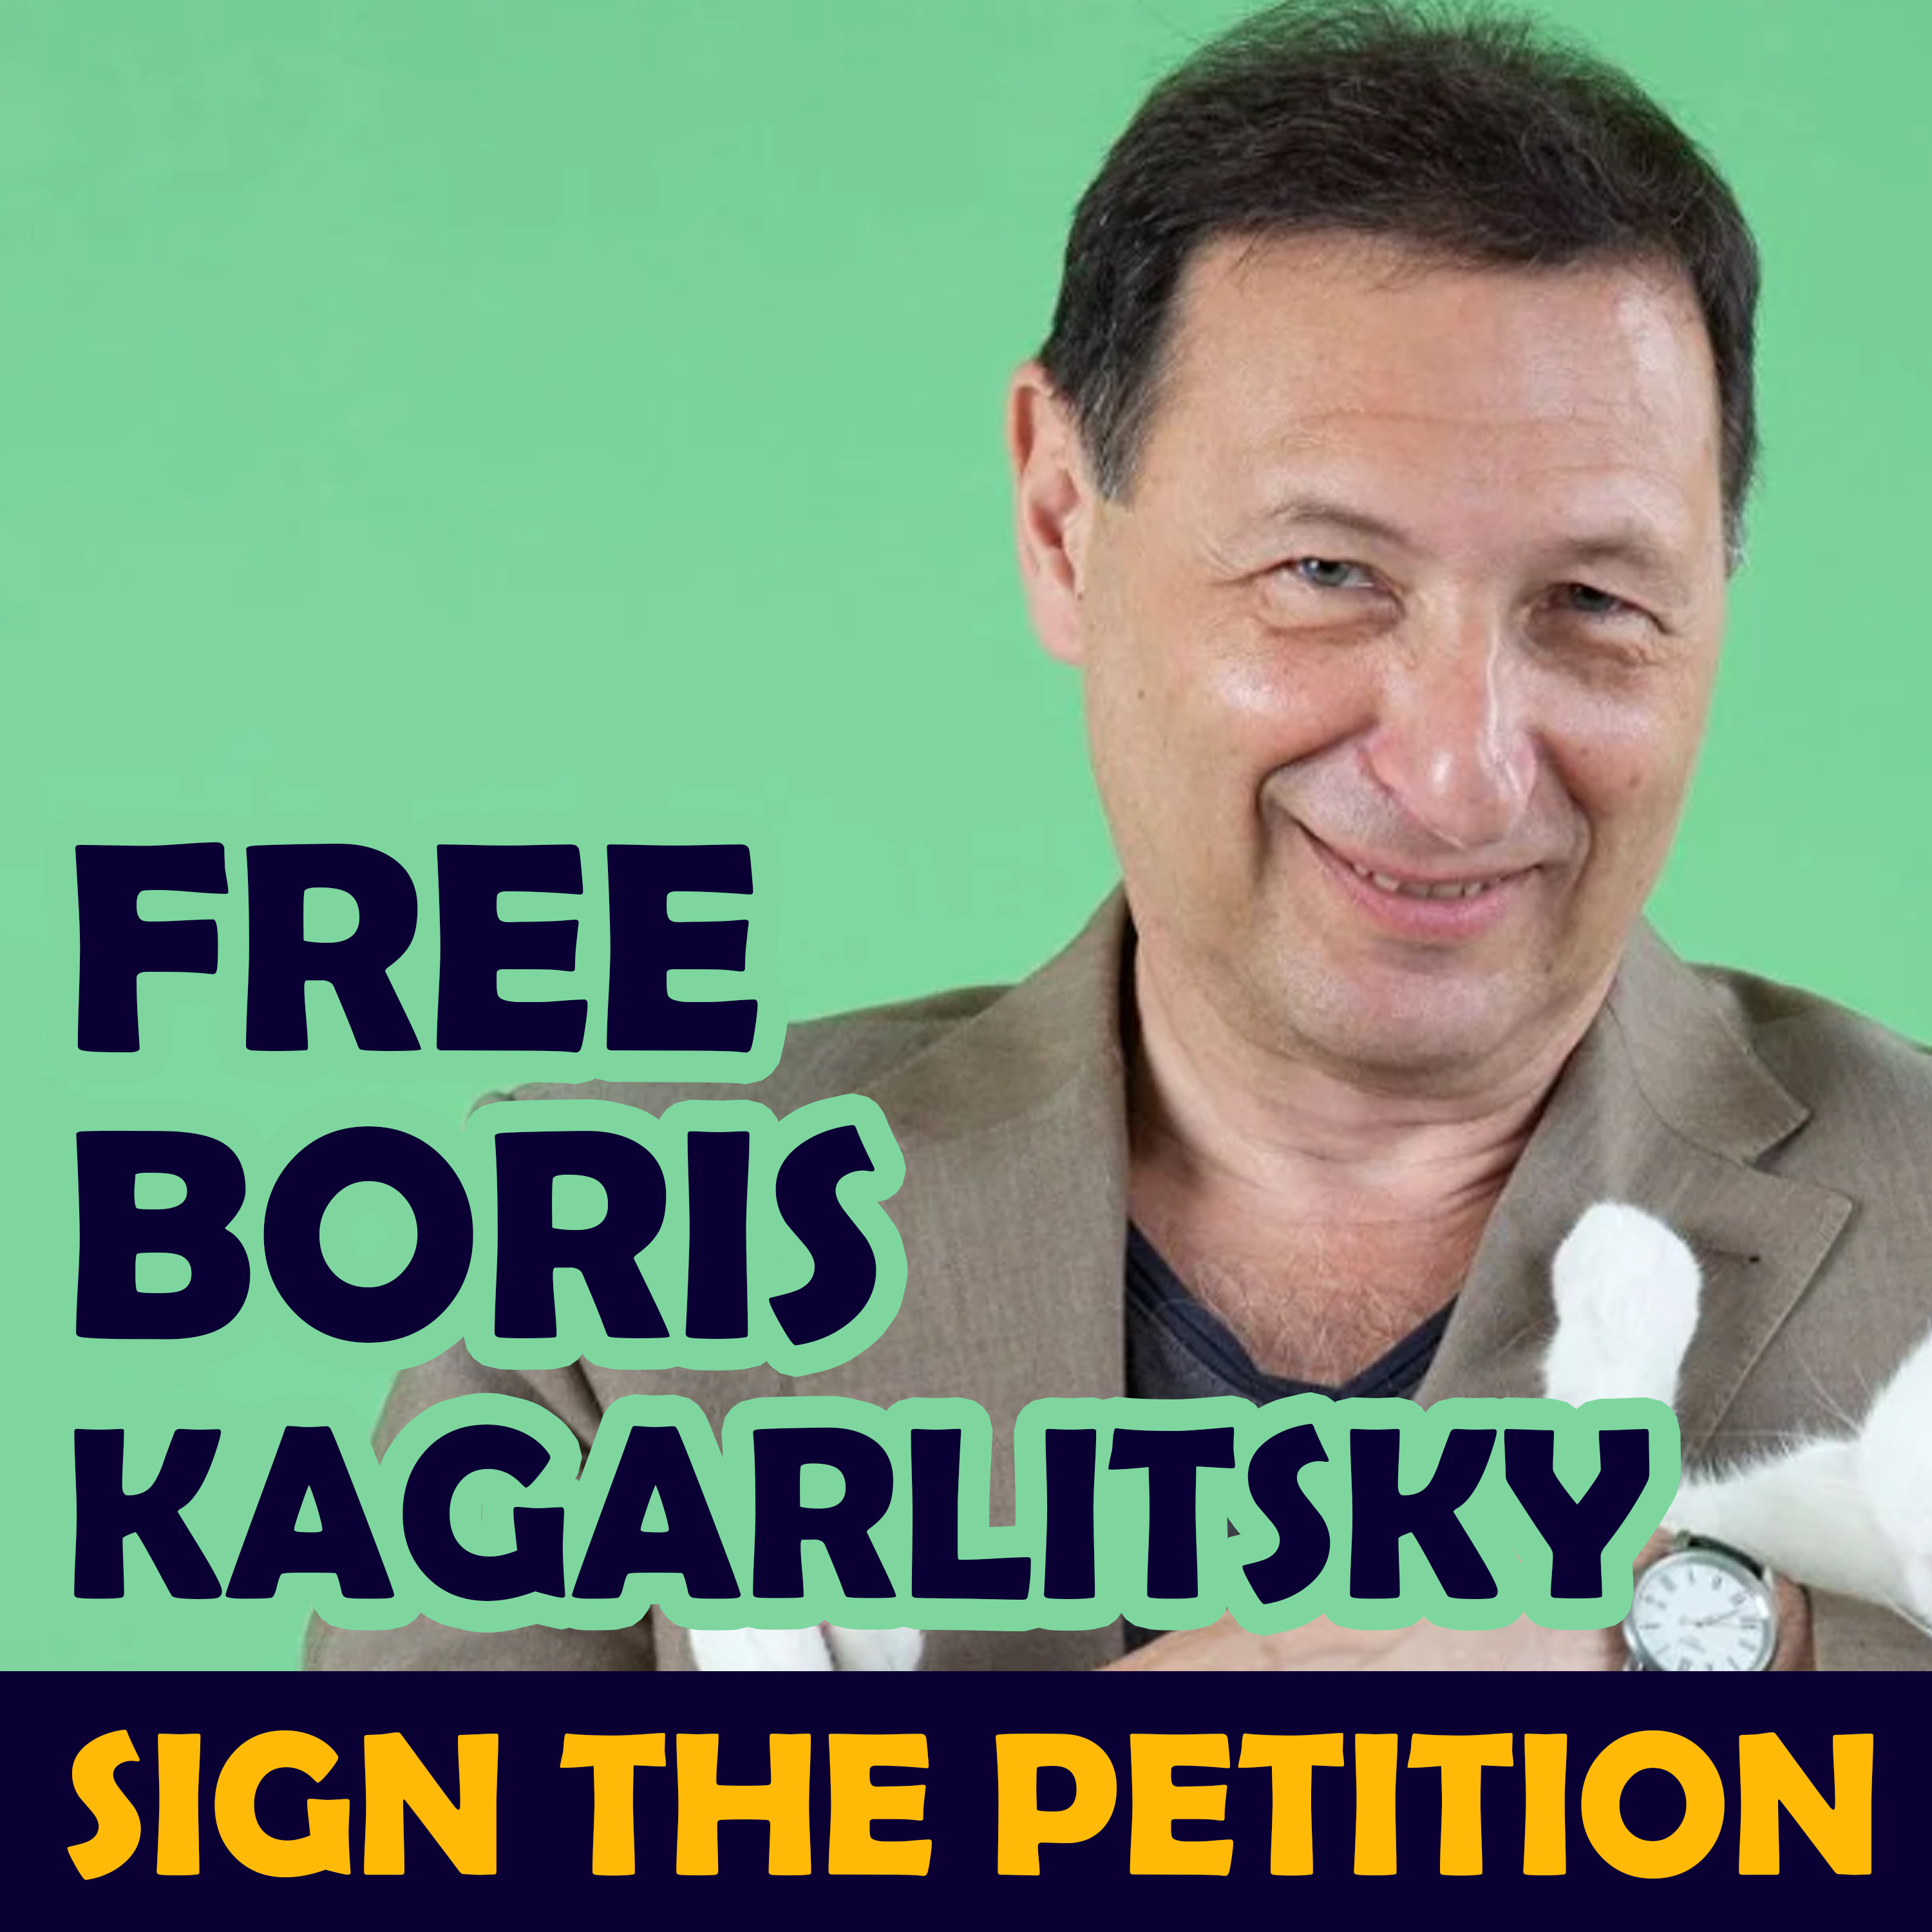 Free Boris Kagarlitsky petition